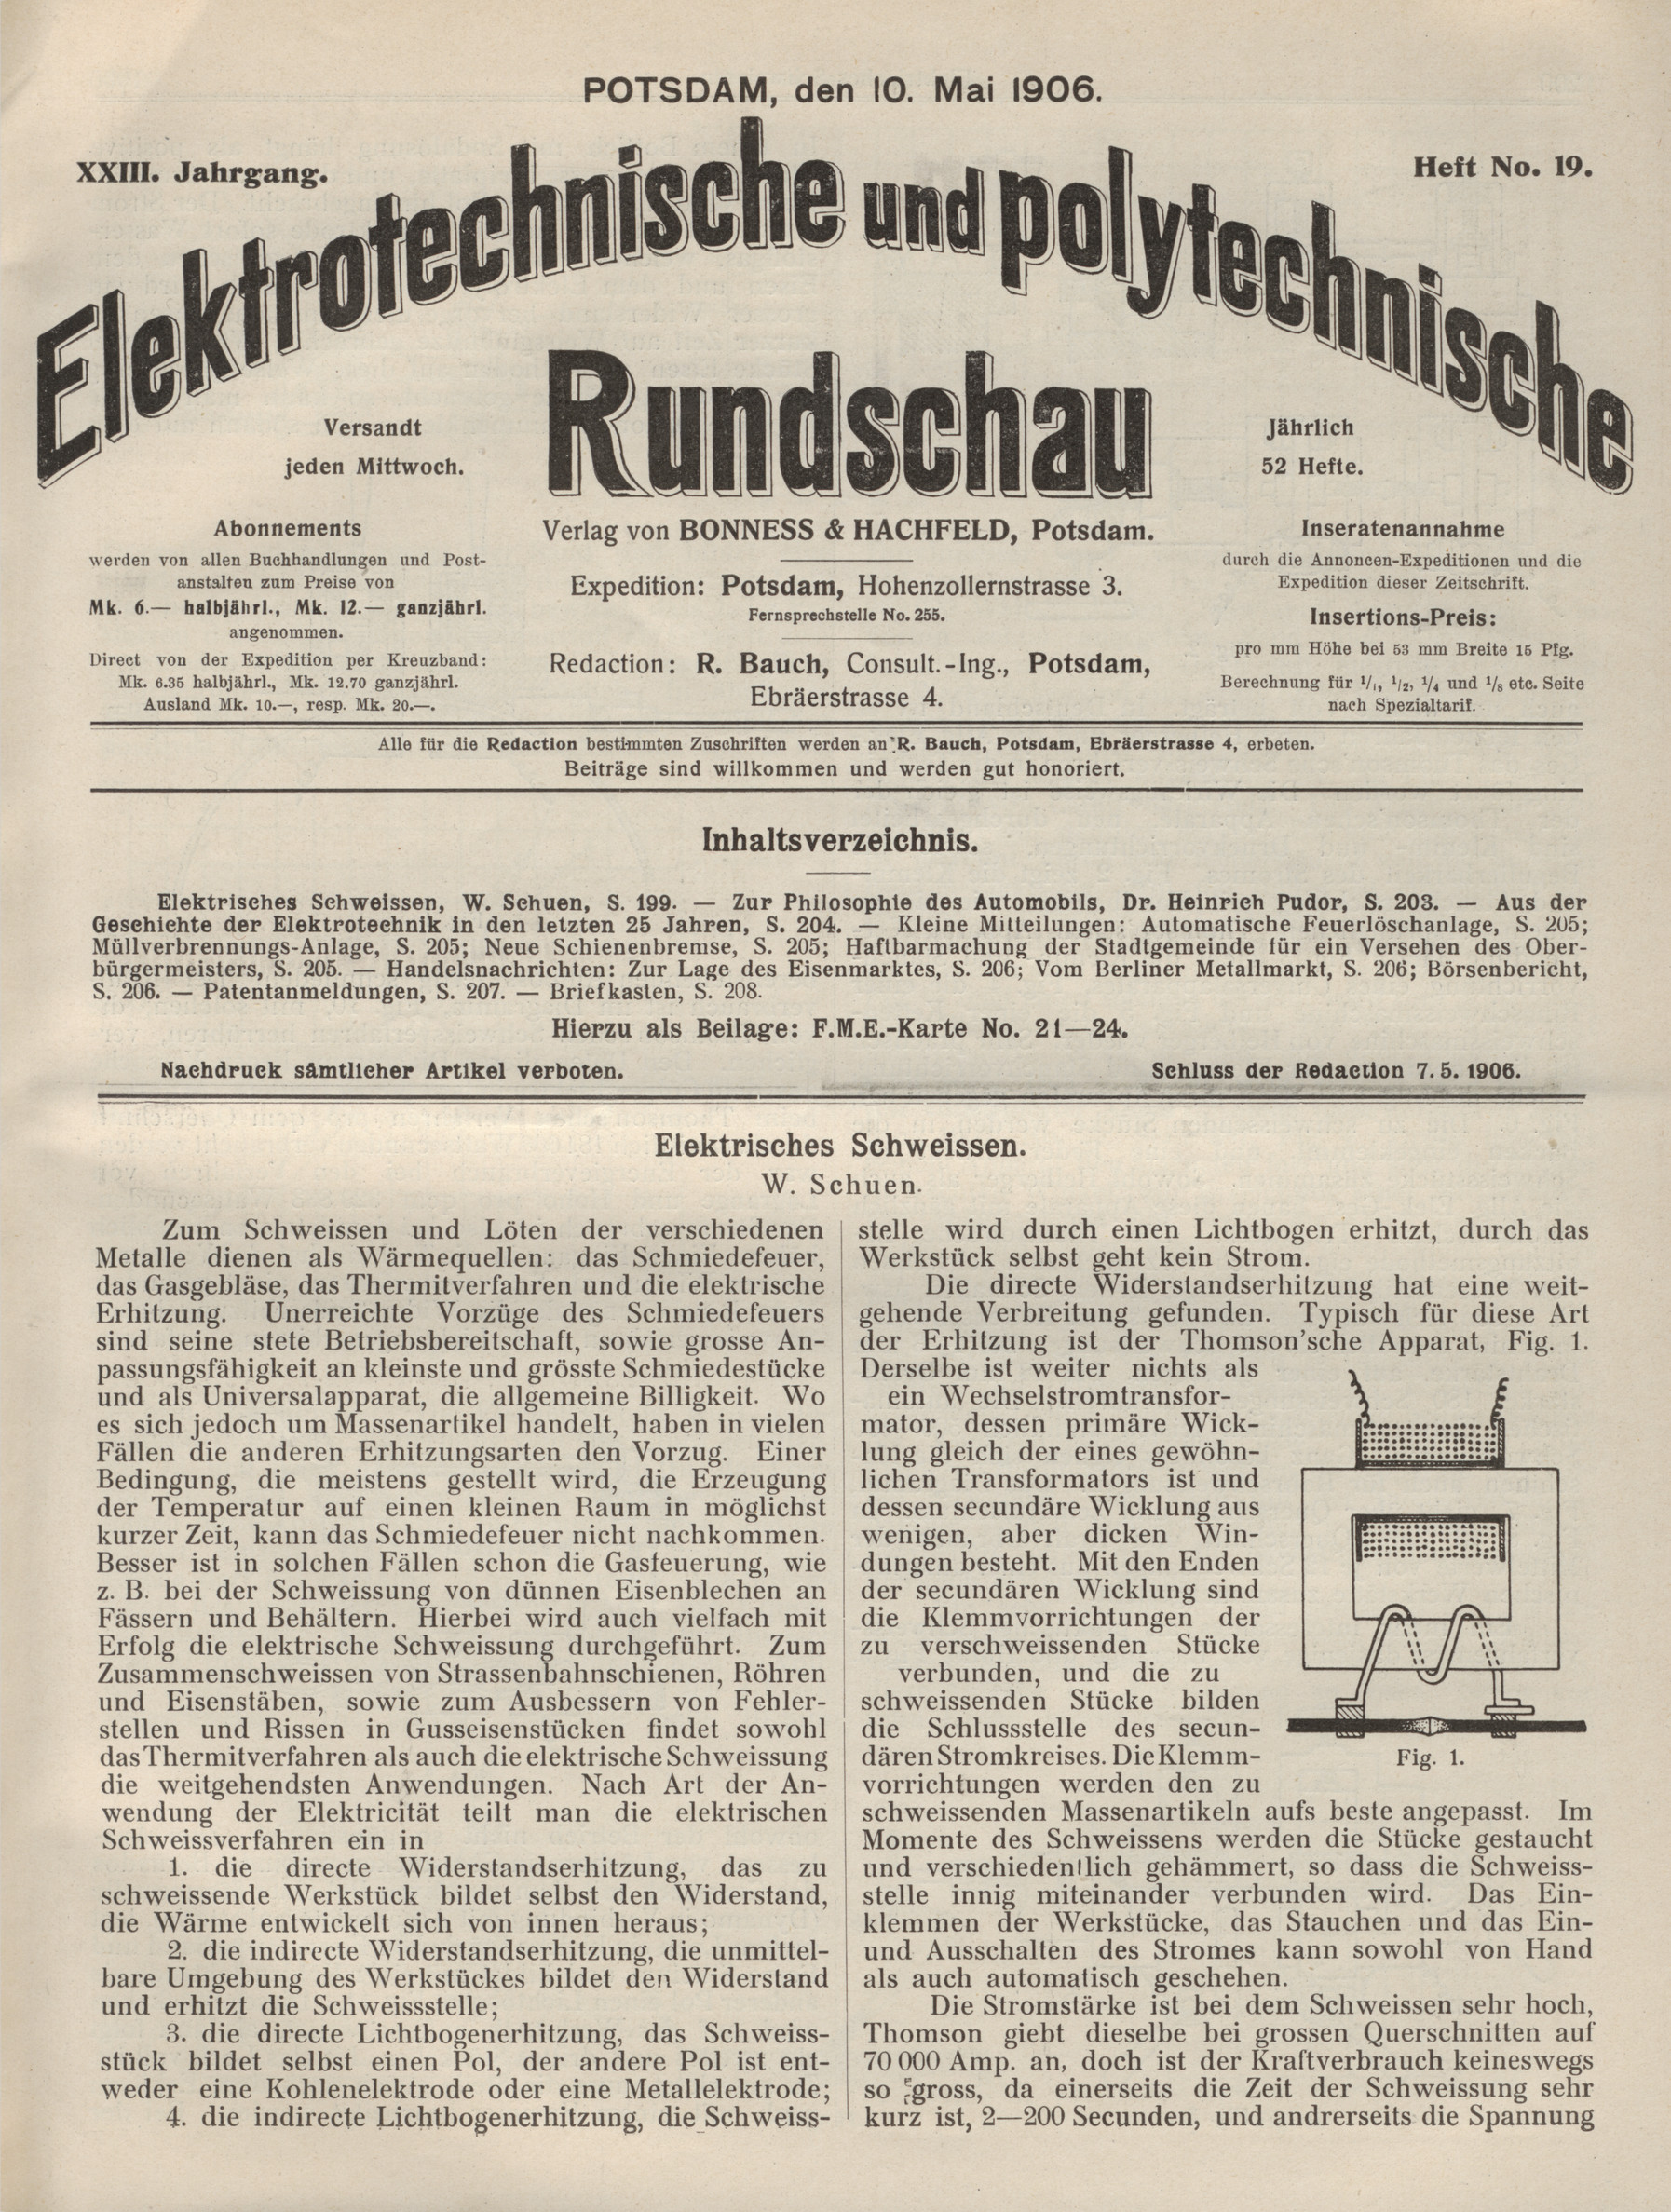 Elektrotechnische und polytechnische Rundschau, XXIII. Jahrgang,  Heft No. 19